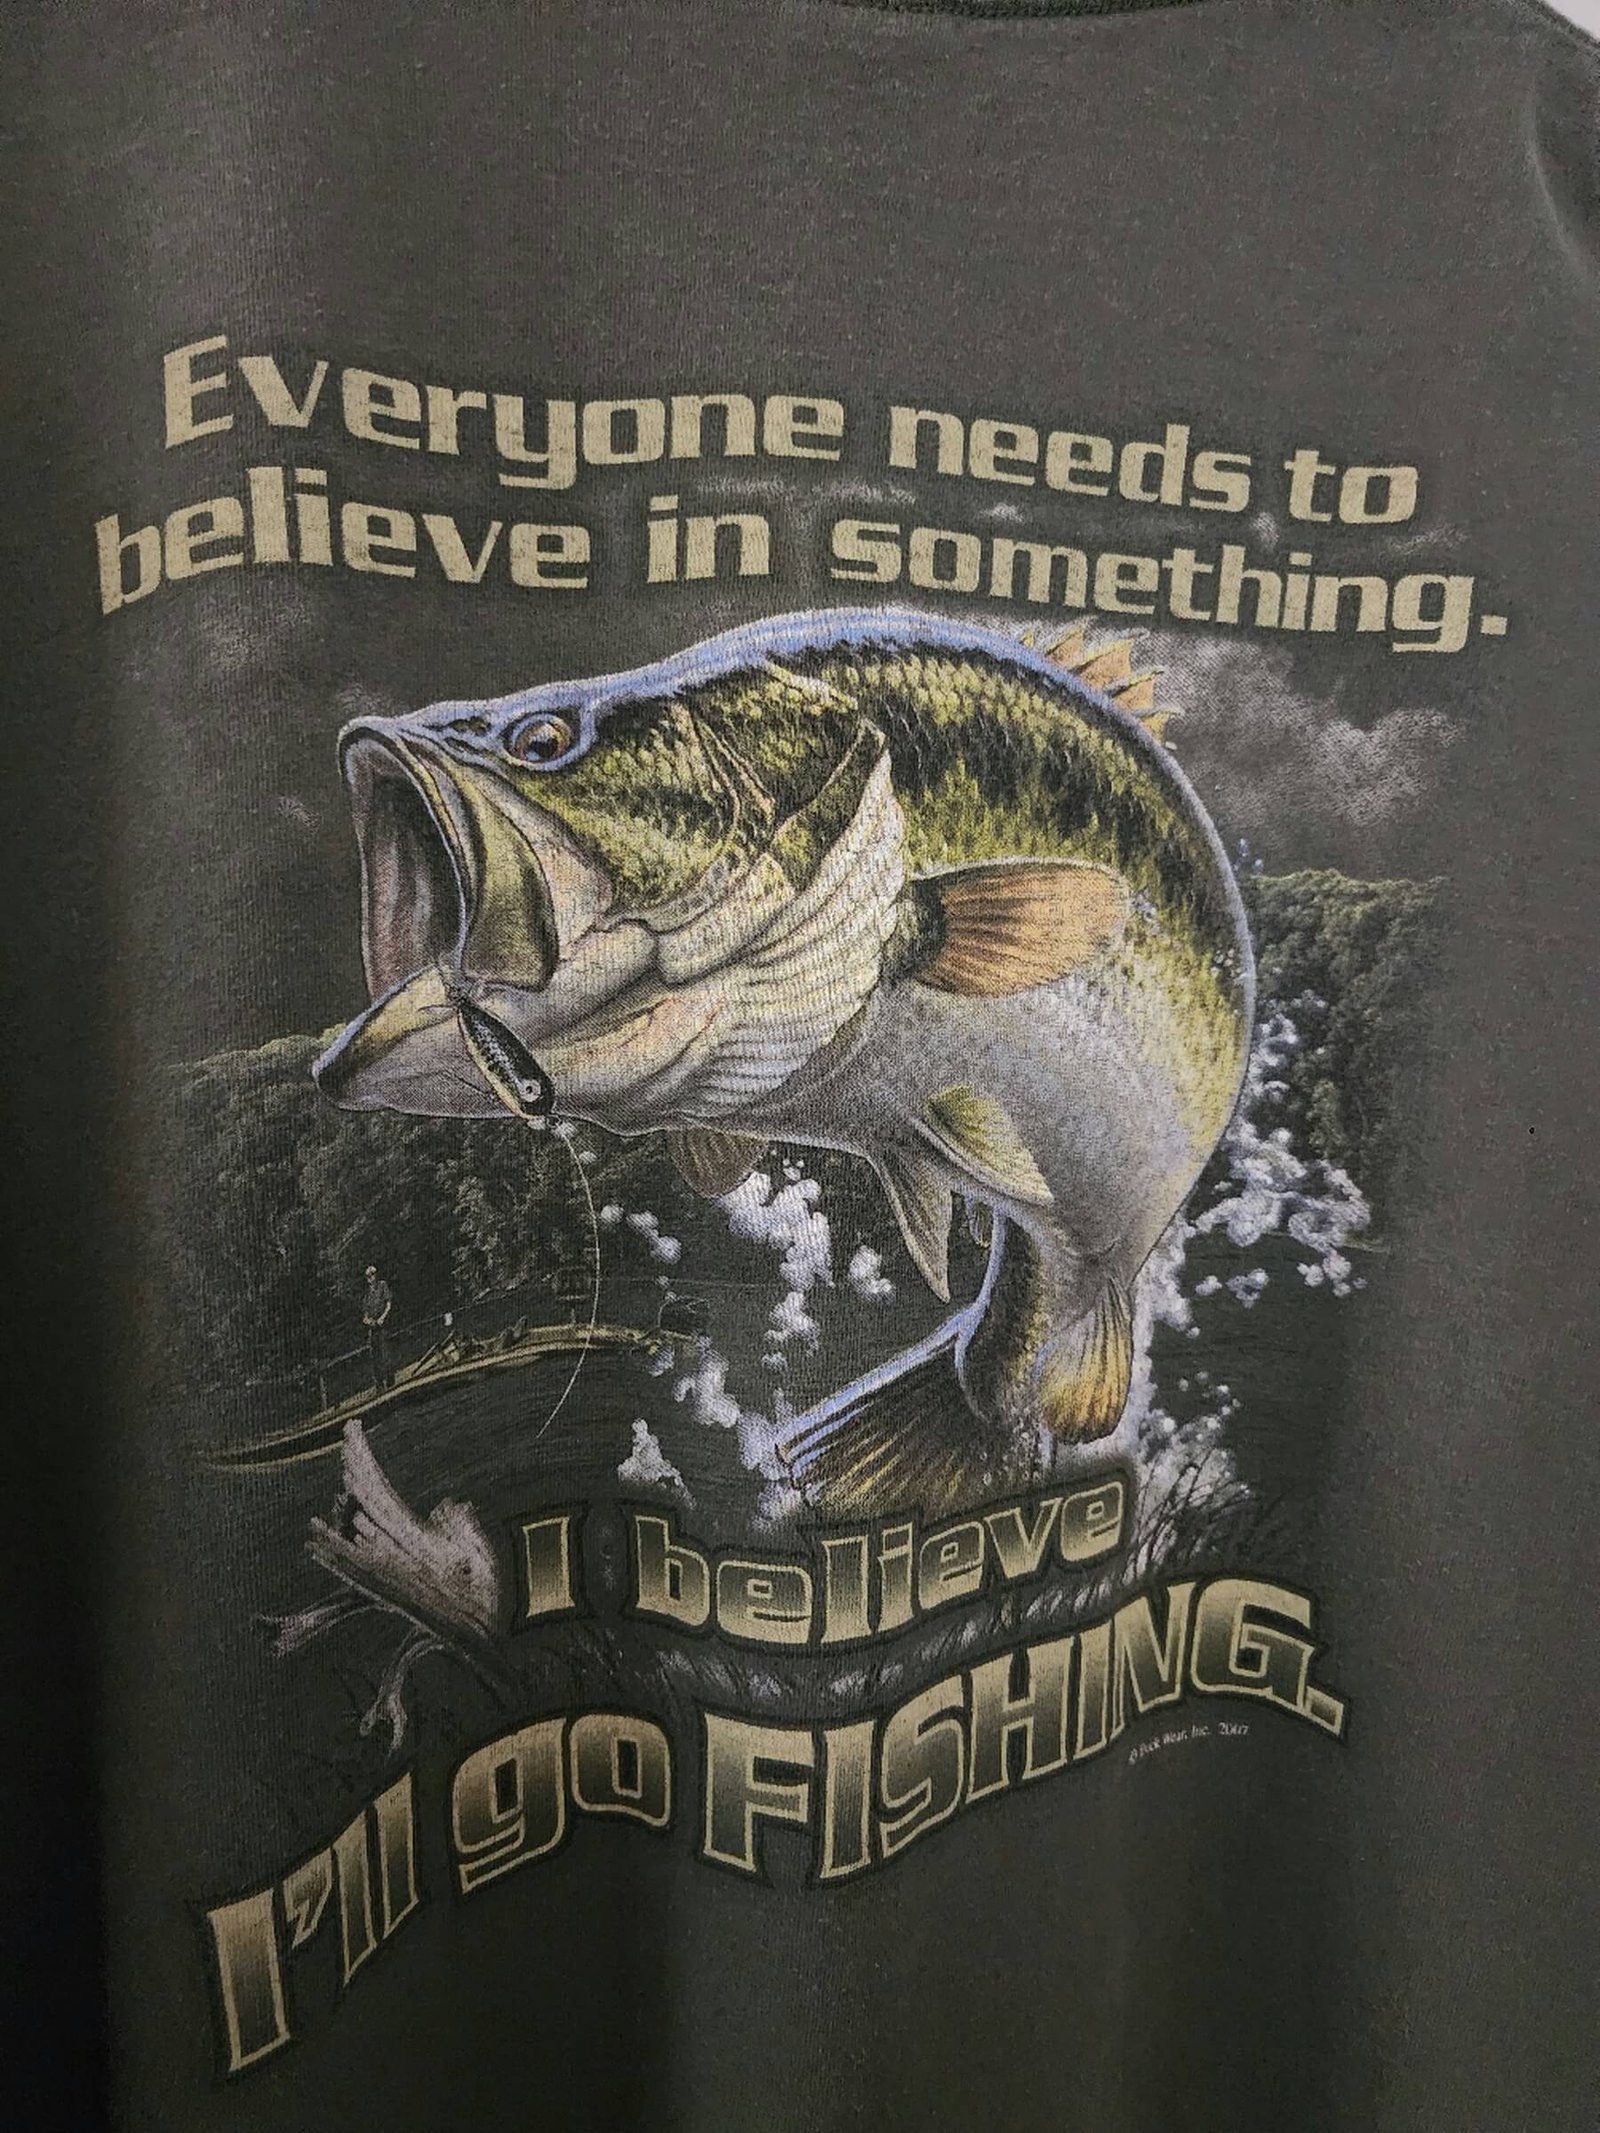 Big Bass Fishing - Fishing - T-Shirt